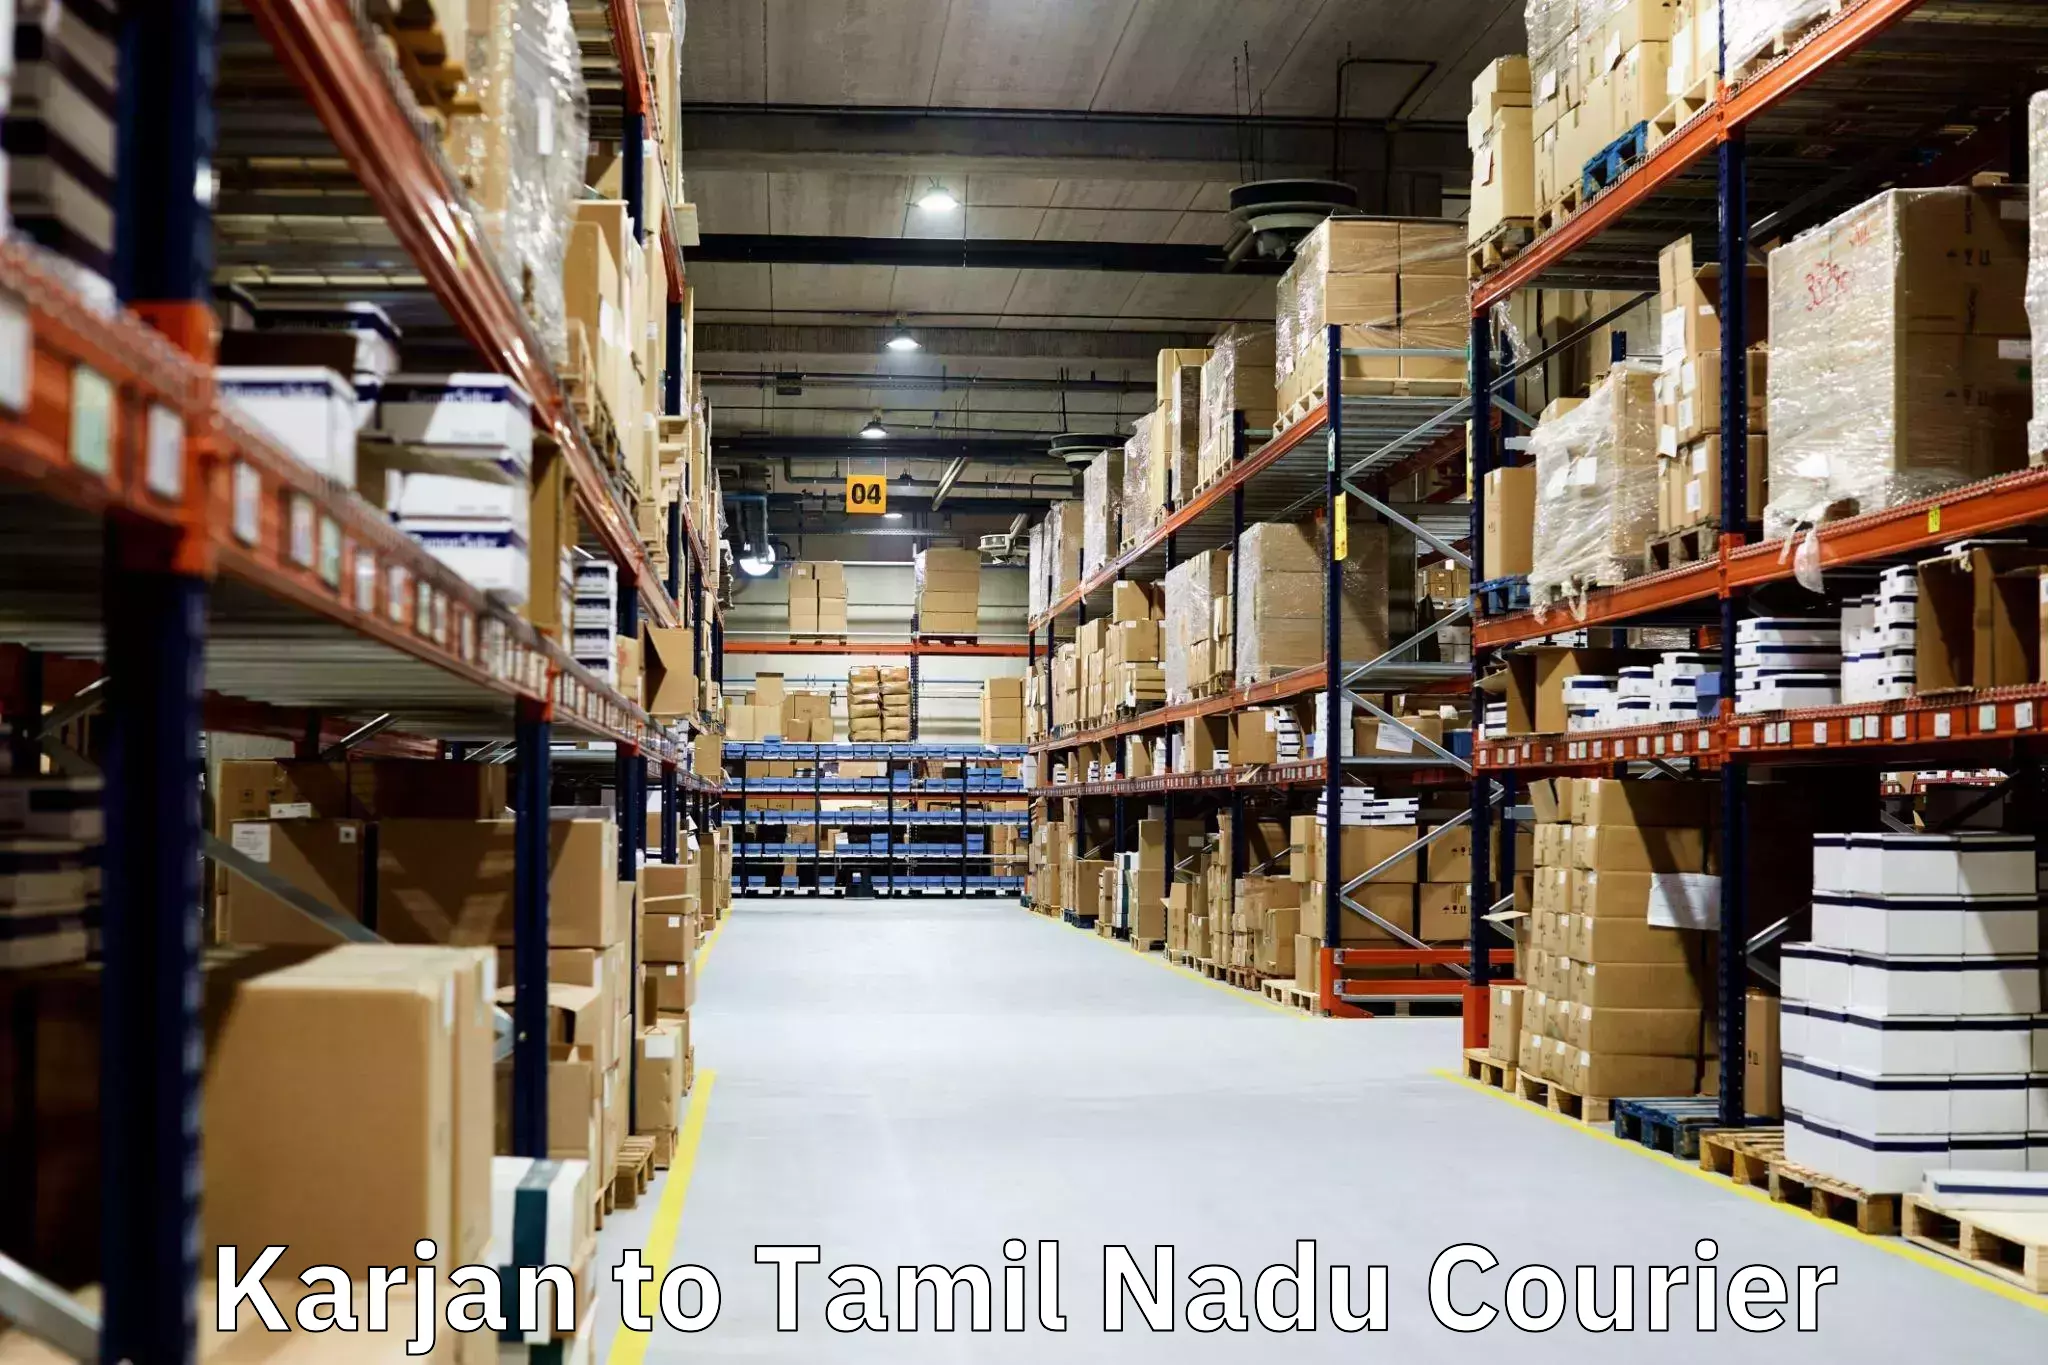 Furniture moving experts Karjan to Tamil Nadu